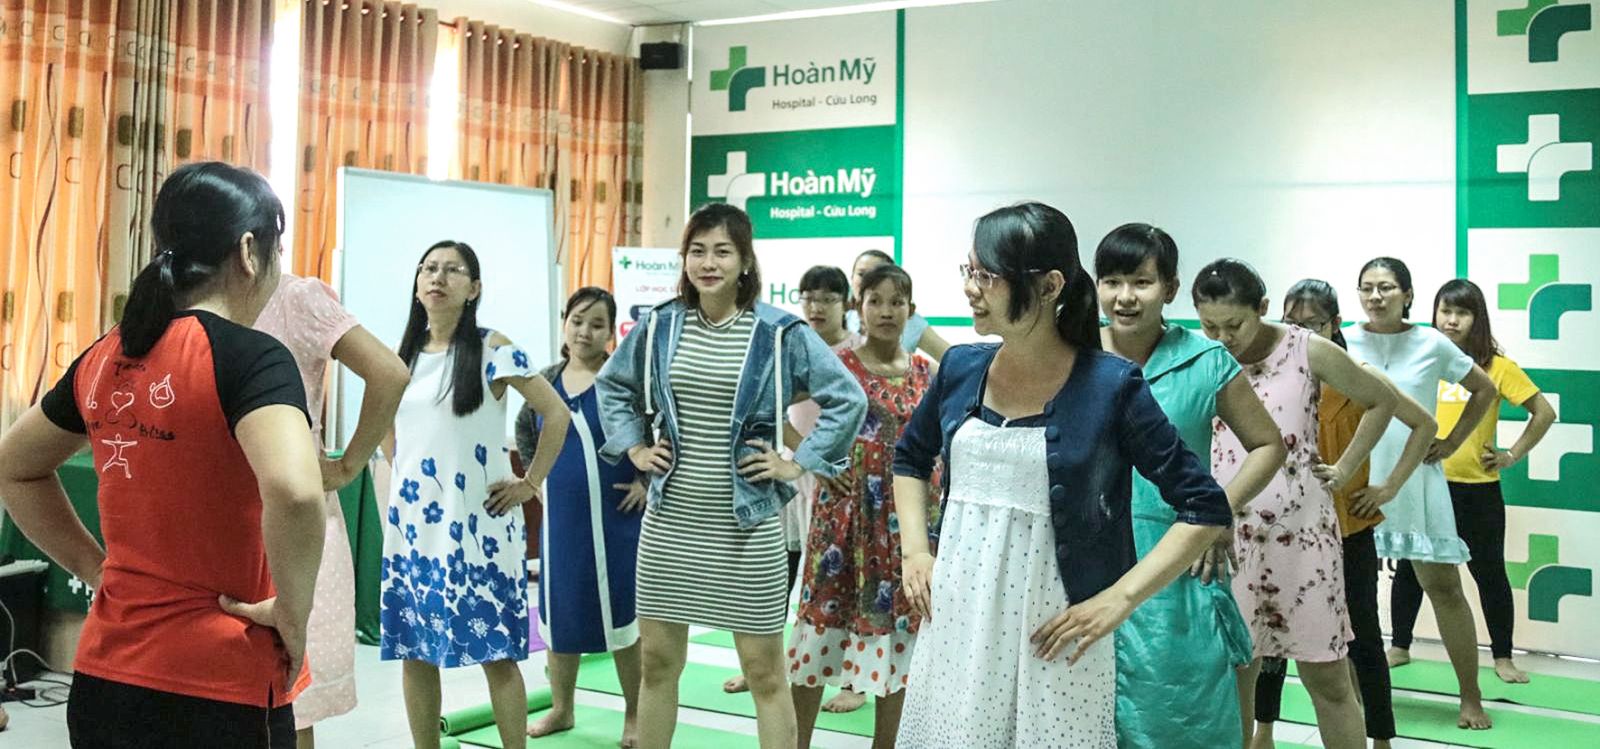 Thai phụ vận động hợp lý giúp thai kỳ khỏe mạnh. Trong ảnh: Thai phụ tham gia lớp học tiền sản do BV Đa khoa Hoàn Mỹ Cửu Long tổ chức.